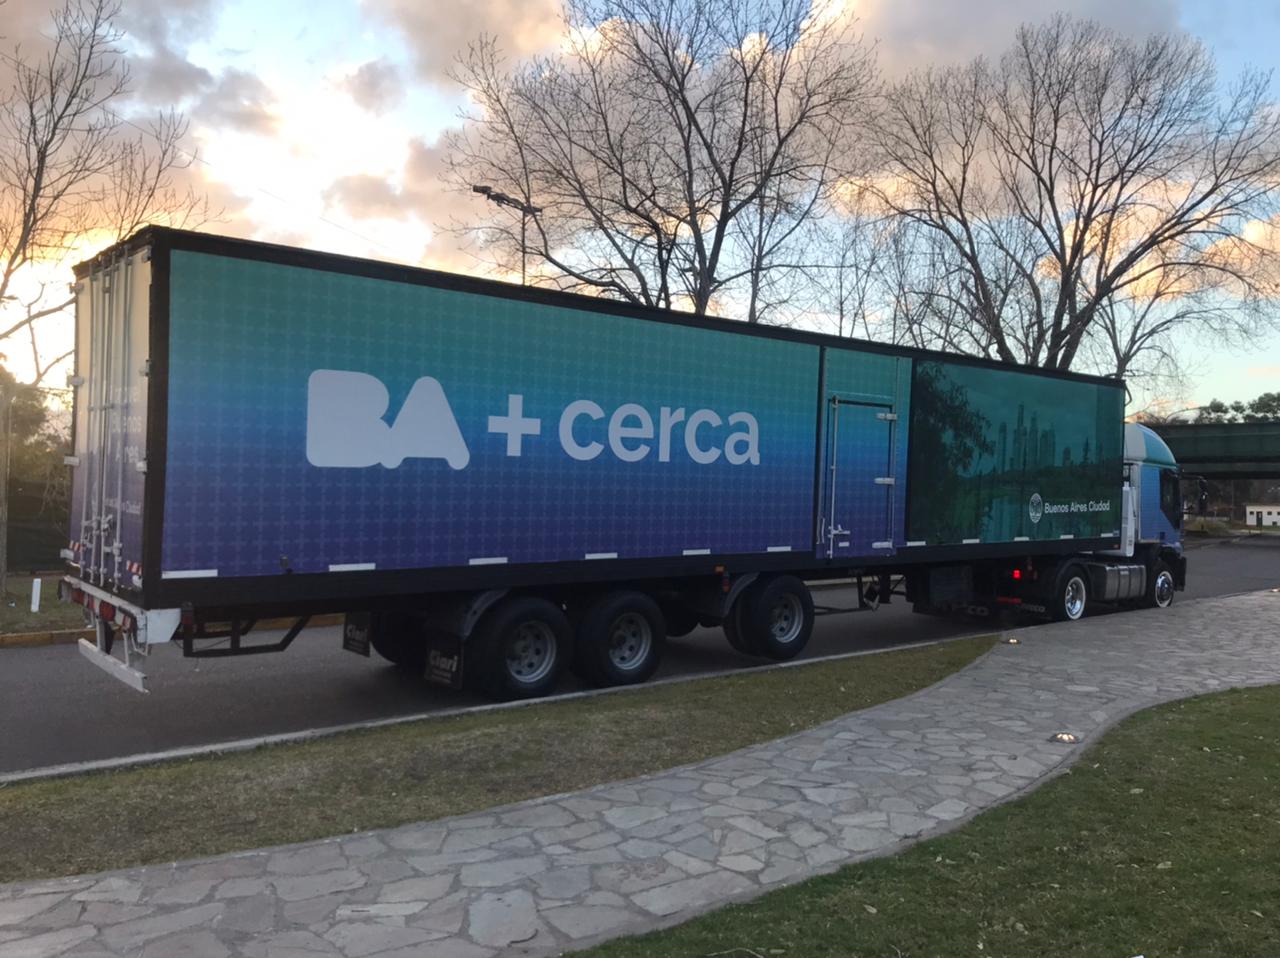 BA más Cerca: el camión de promoción turística de la Ciudad llega a Rosario